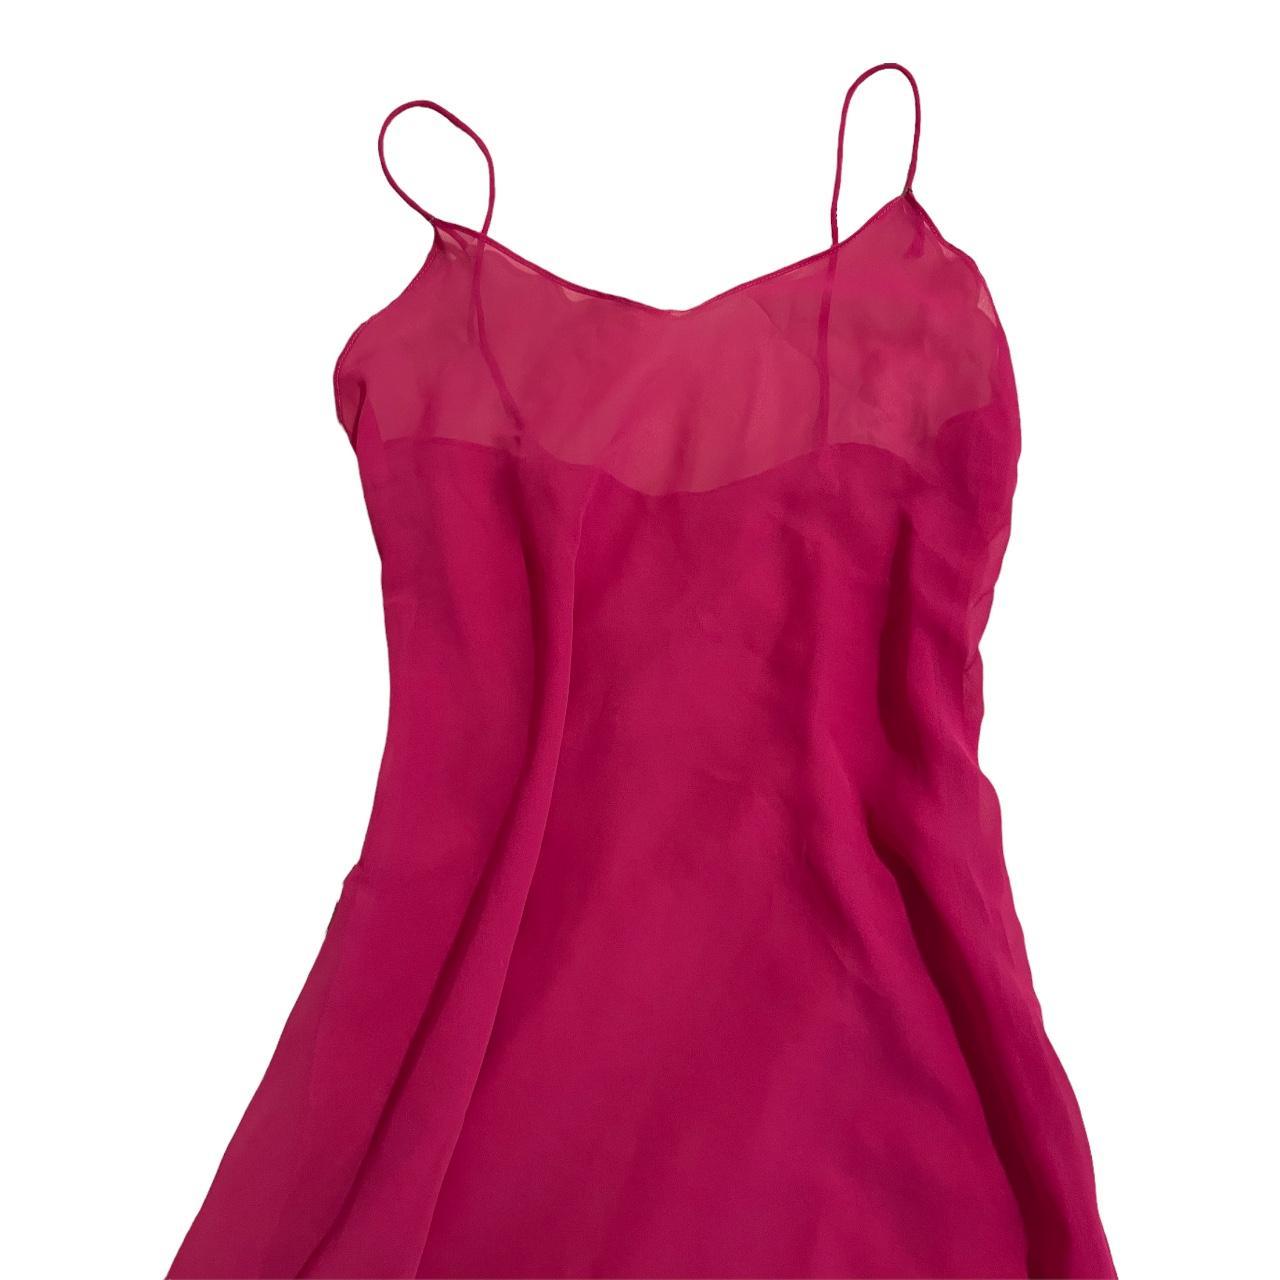 90s Sheer long pink dress Stunning dress, but it... - Depop